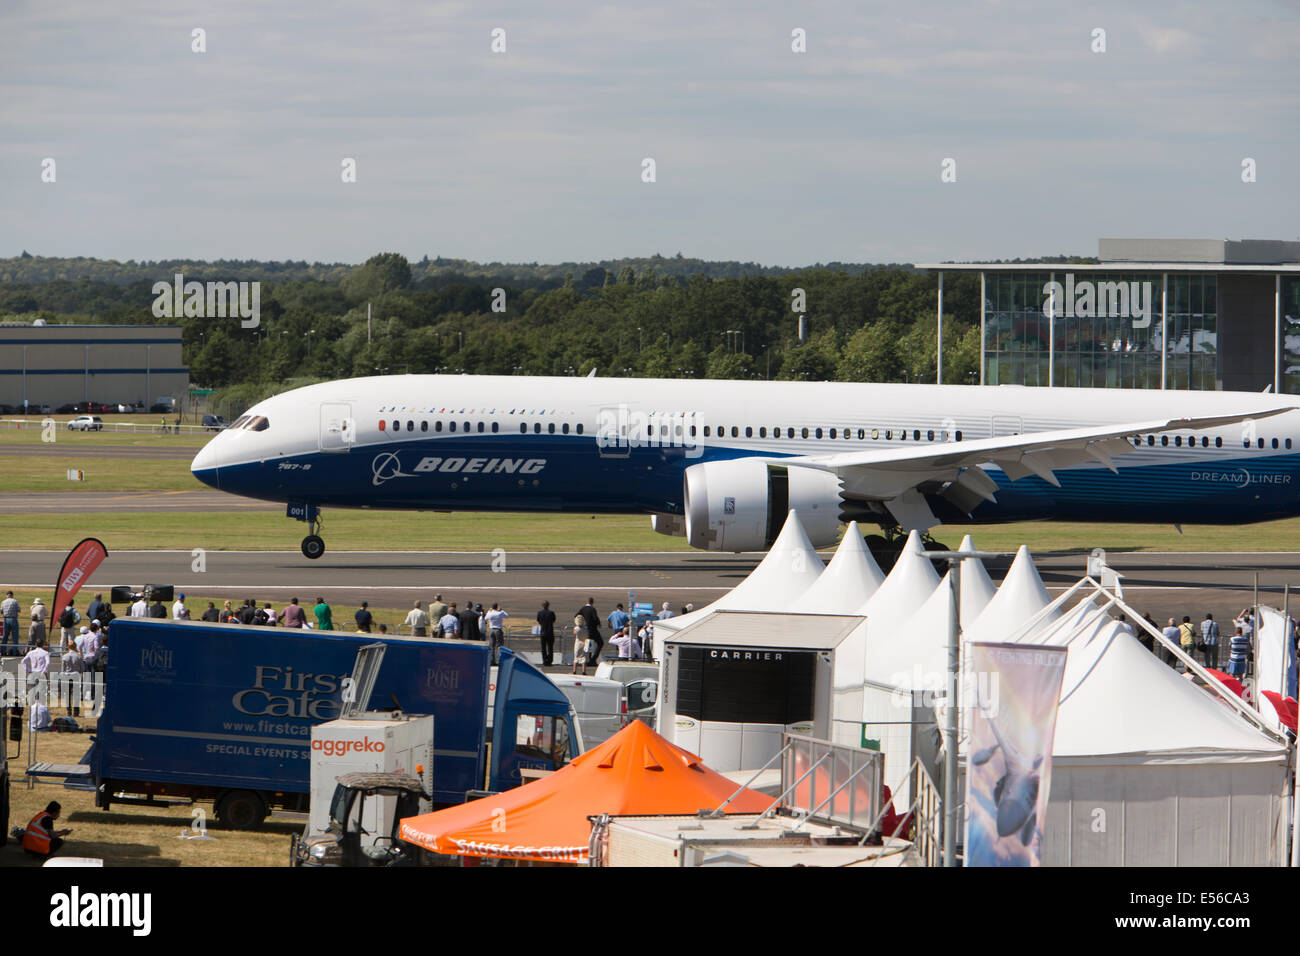 Boeing 787-9 AT FARNBOROUGH AIR SHOW 2014 Stock Photo